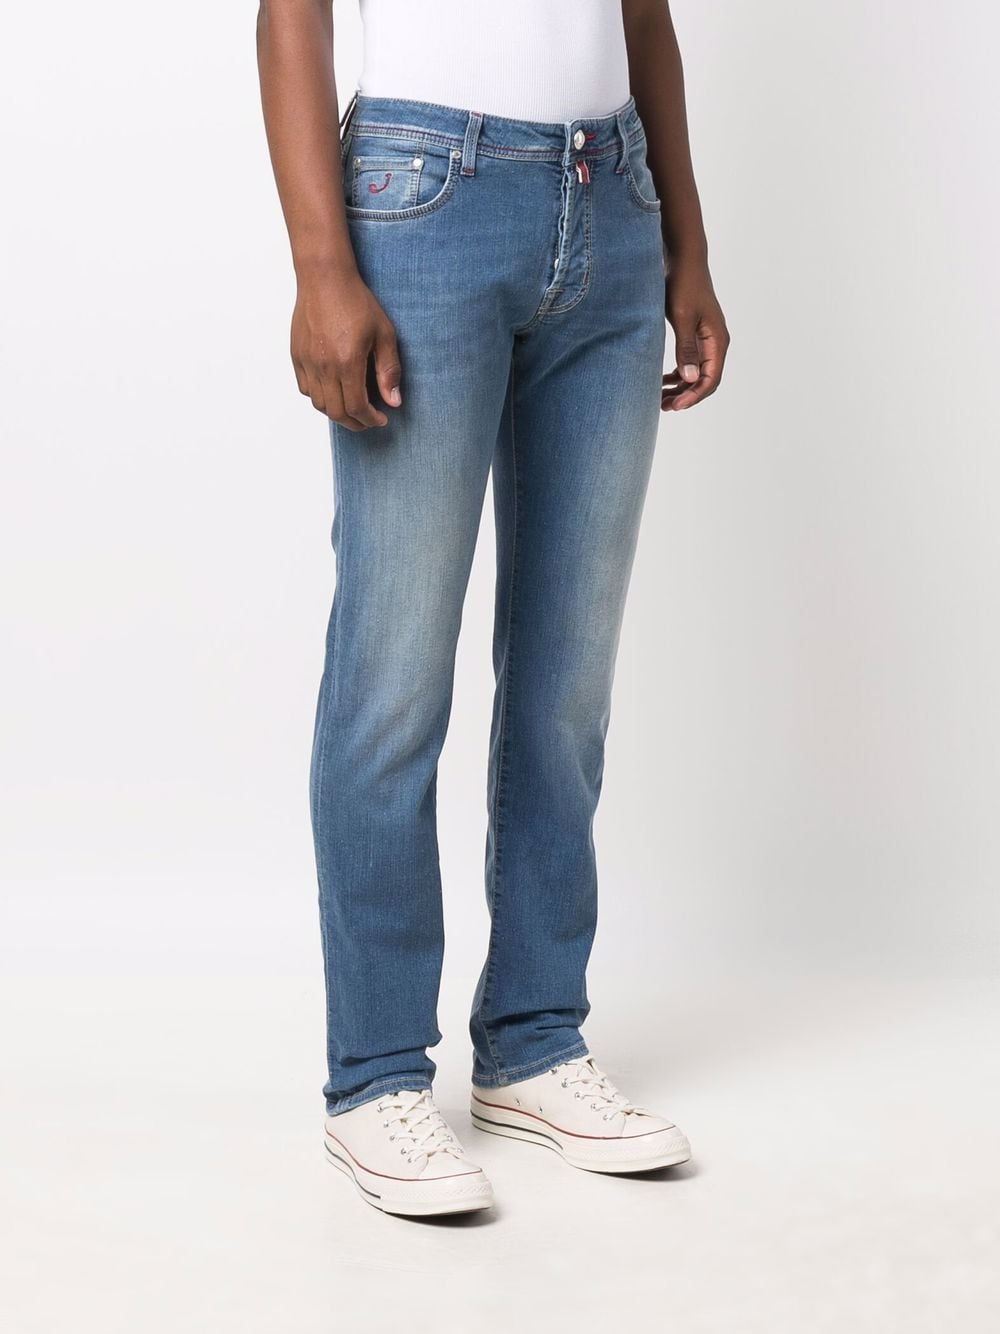 фото Jacob cohen джинсы прямого кроя с контрастной строчкой